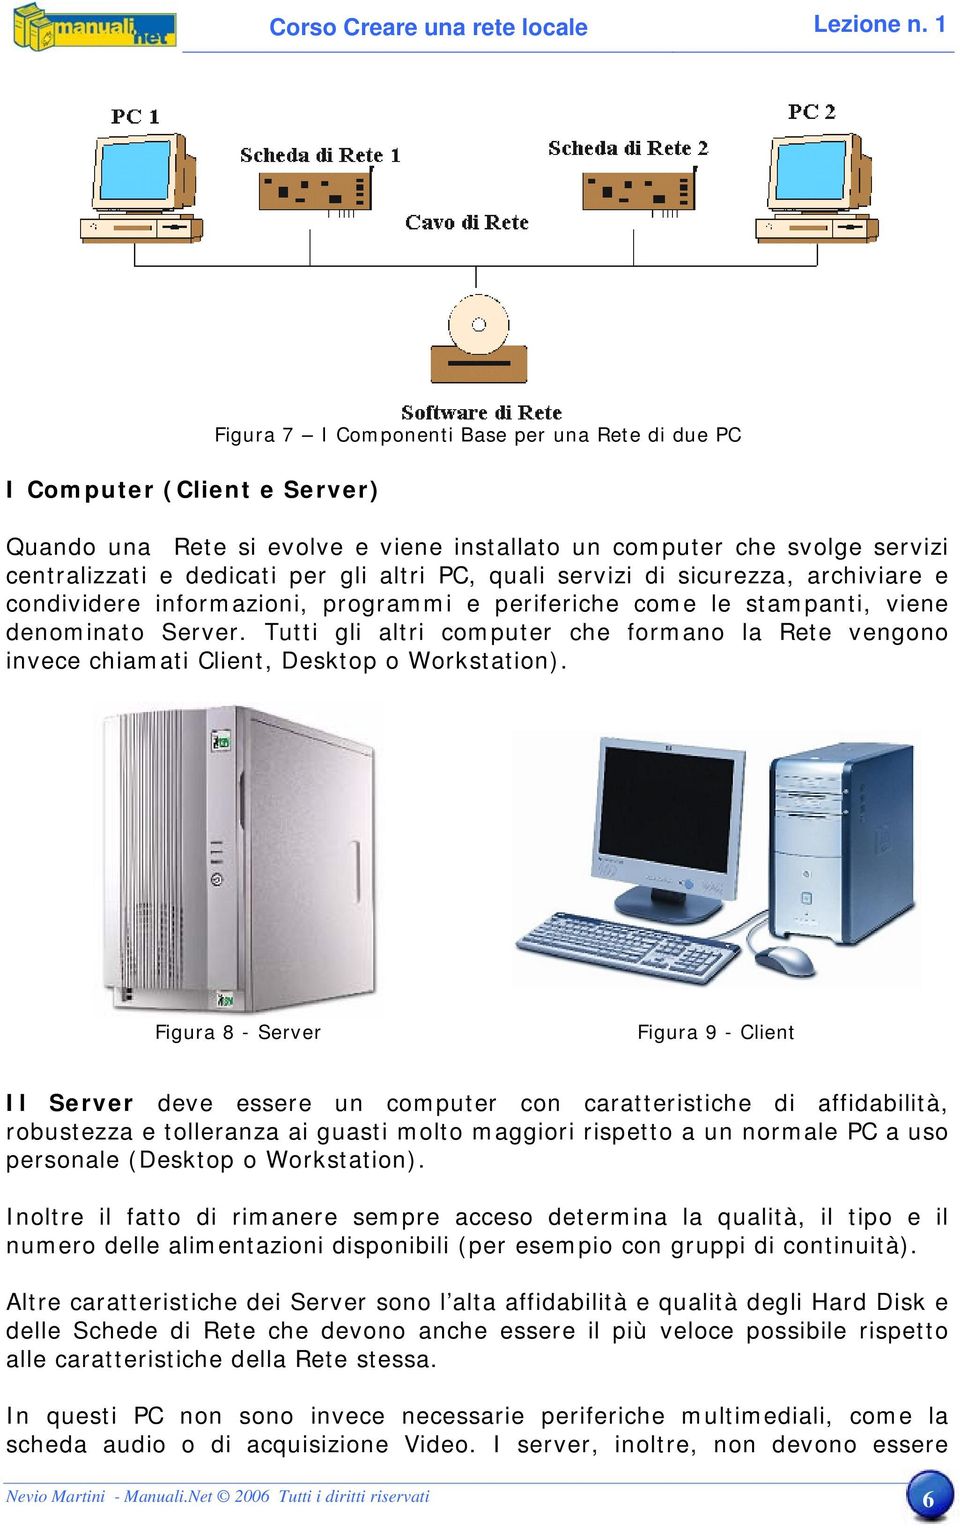 Tutti gli altri computer che formano la Rete vengono invece chiamati Client, Desktop o Workstation).